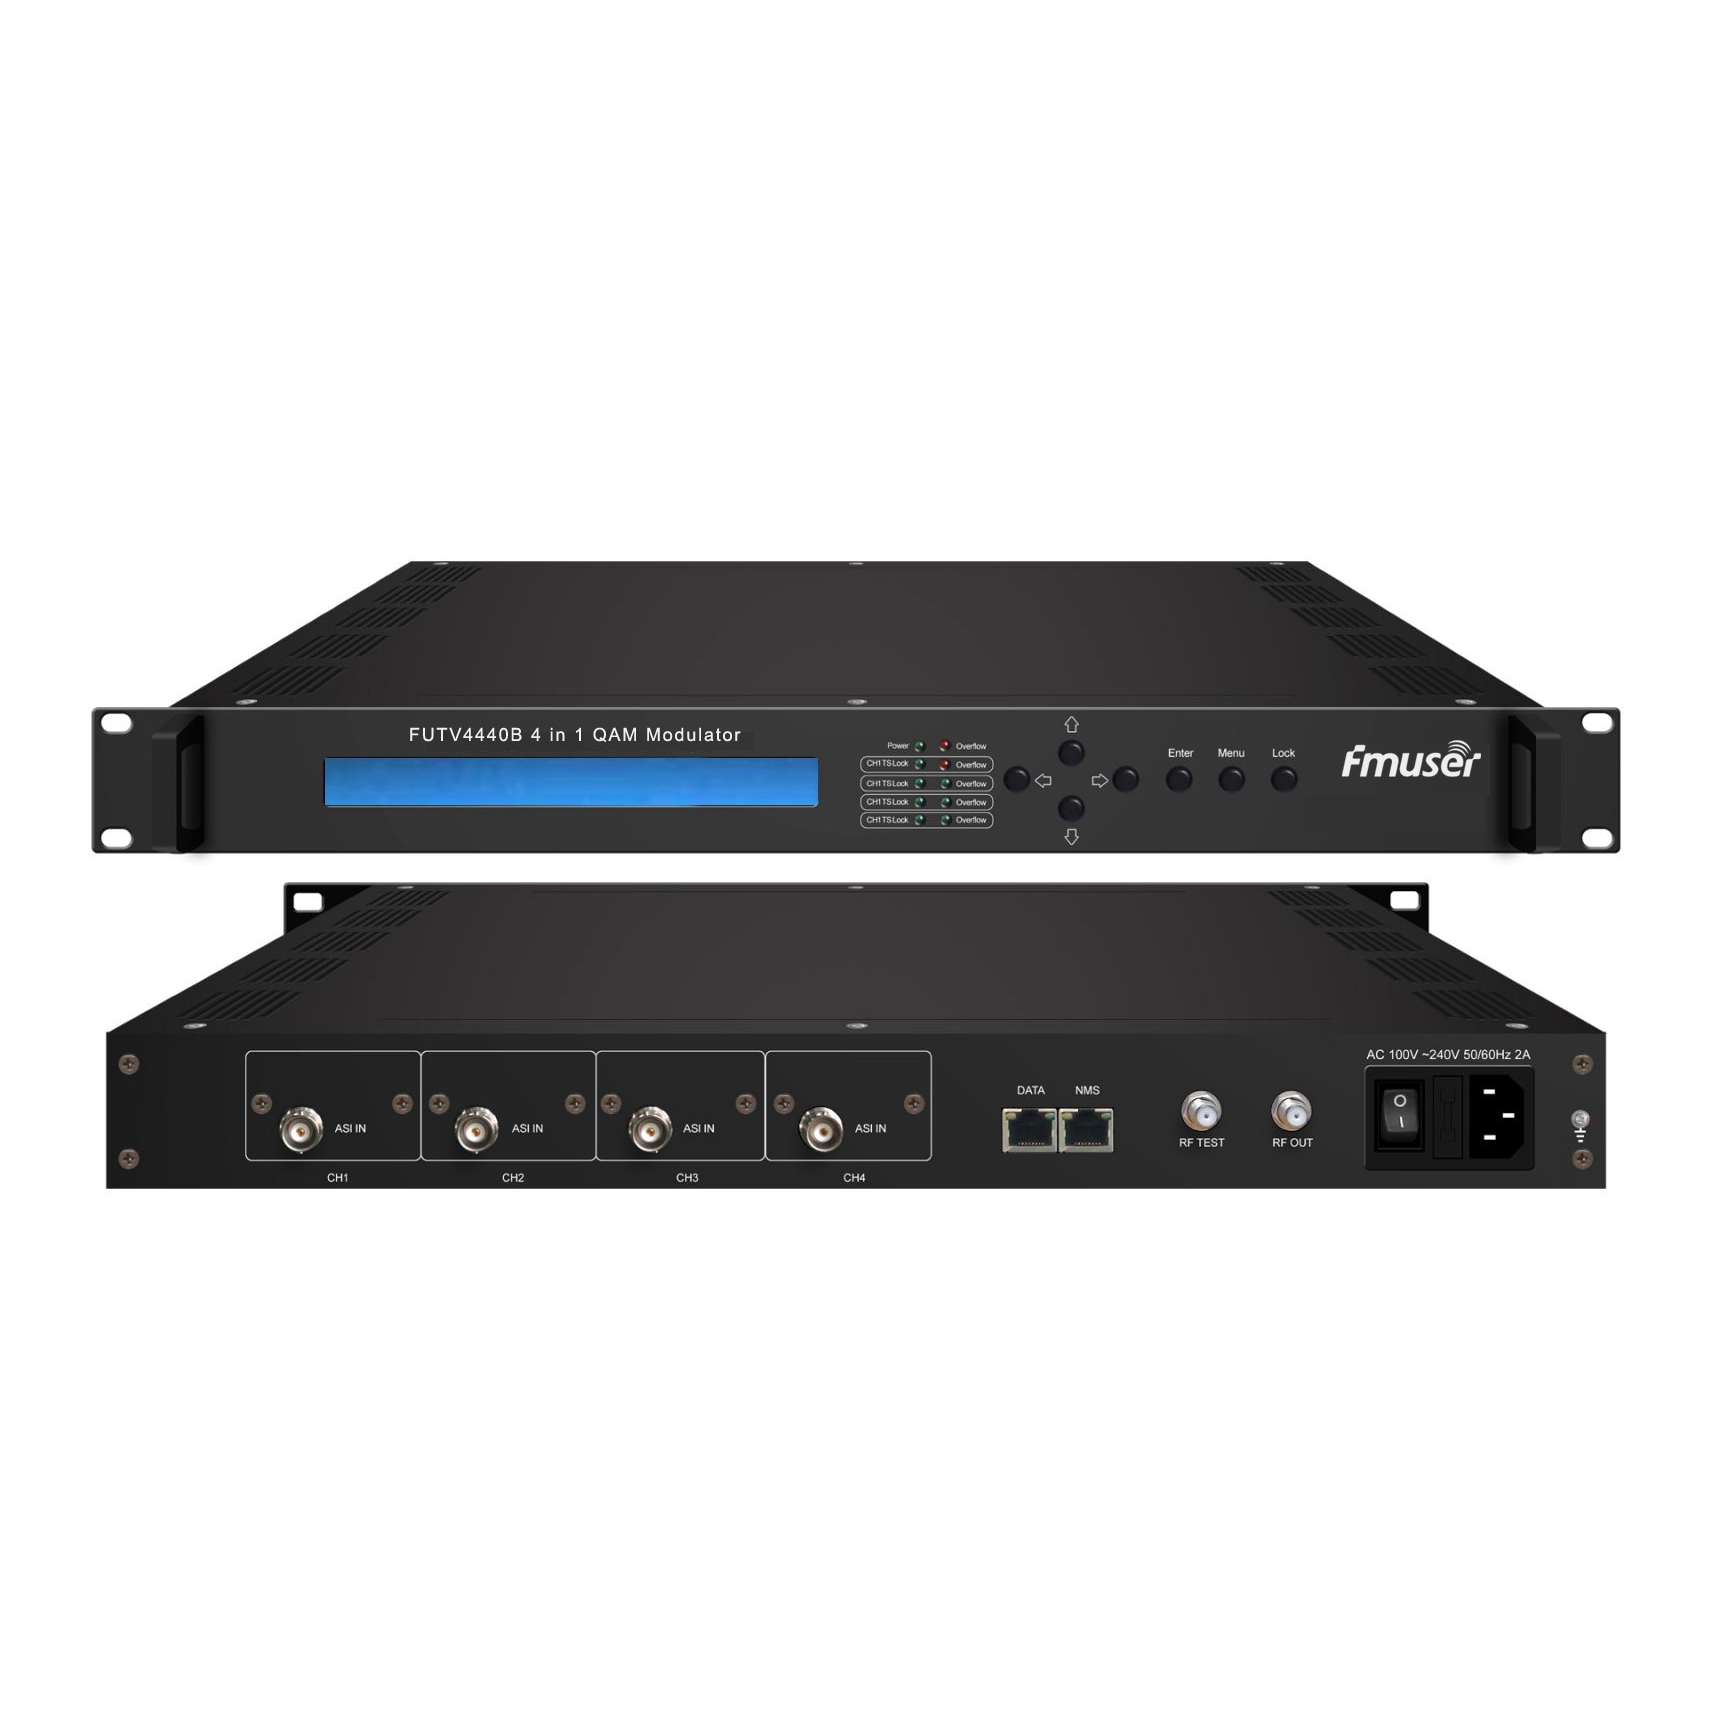 FMUSER FUTV4440B 4 i 1 QAM Modulator (tillval 4 * ASI / 4 * QAM / 4 * DVB-S-tuner / 4 * DVB-S2 tuner ingång, RF-utgång) med nätverksadministration